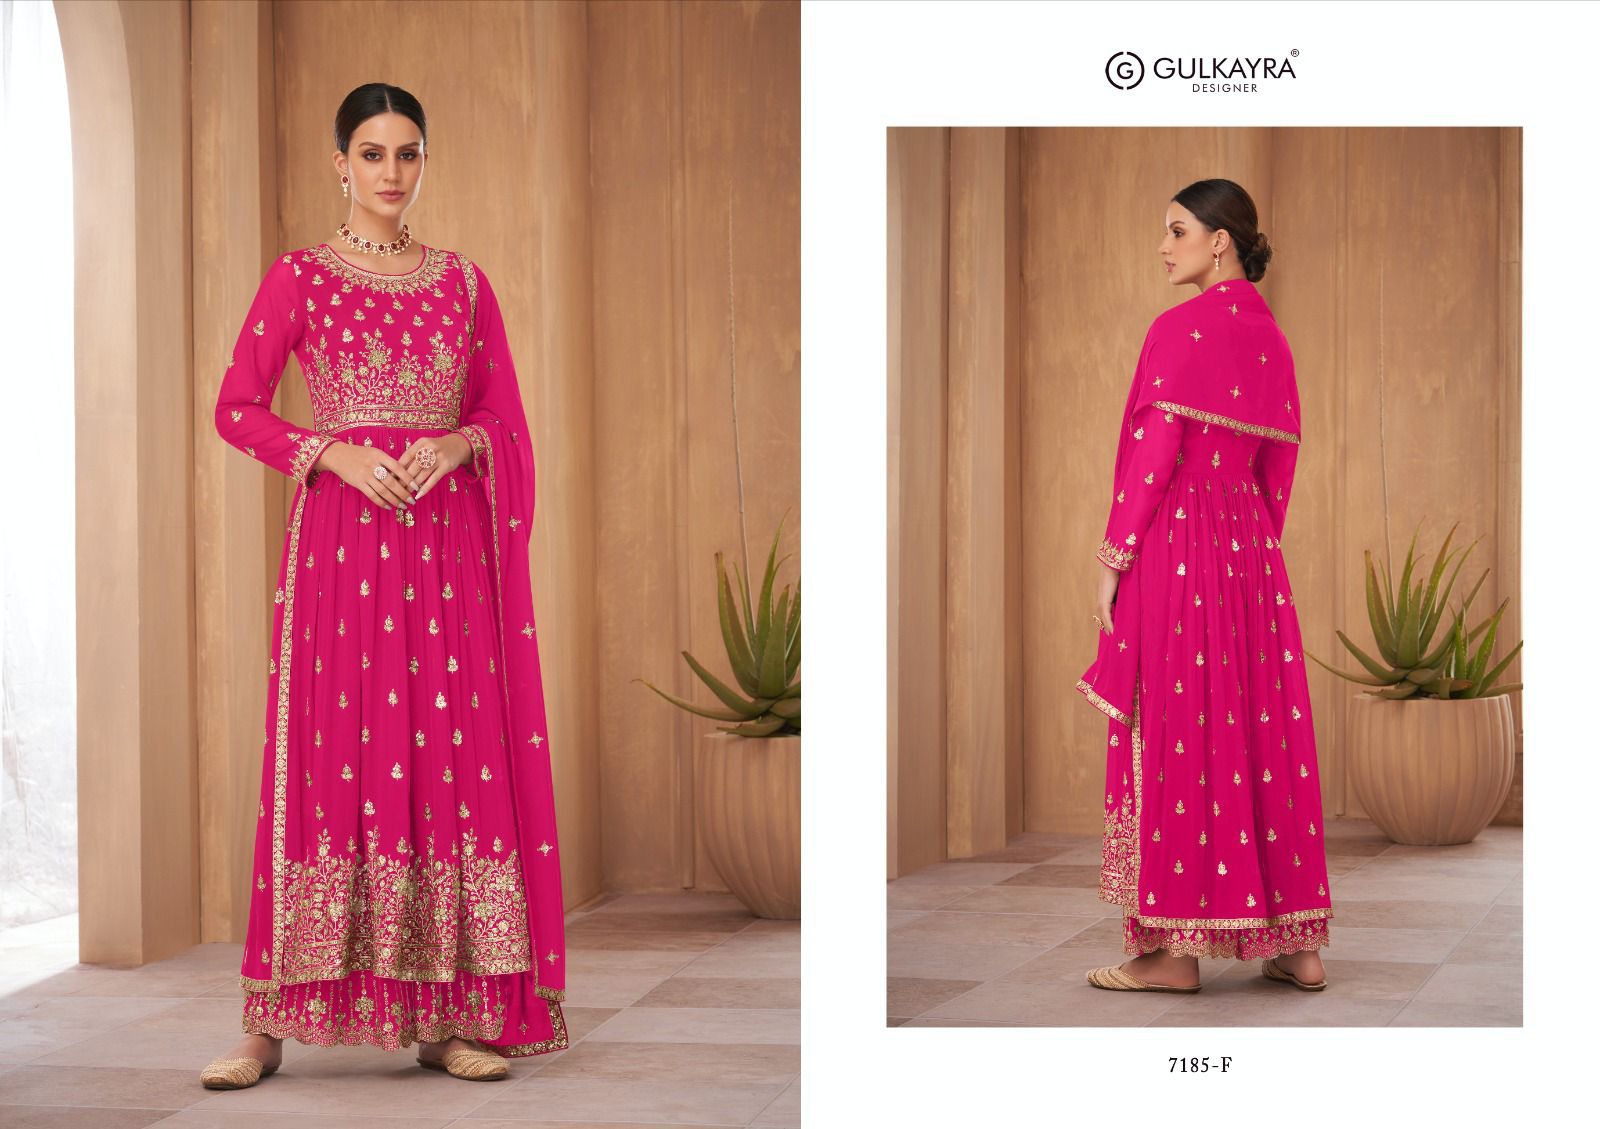 gulkayra designer nayra vol 2 blooming georgette elegant look salwar suit catalog